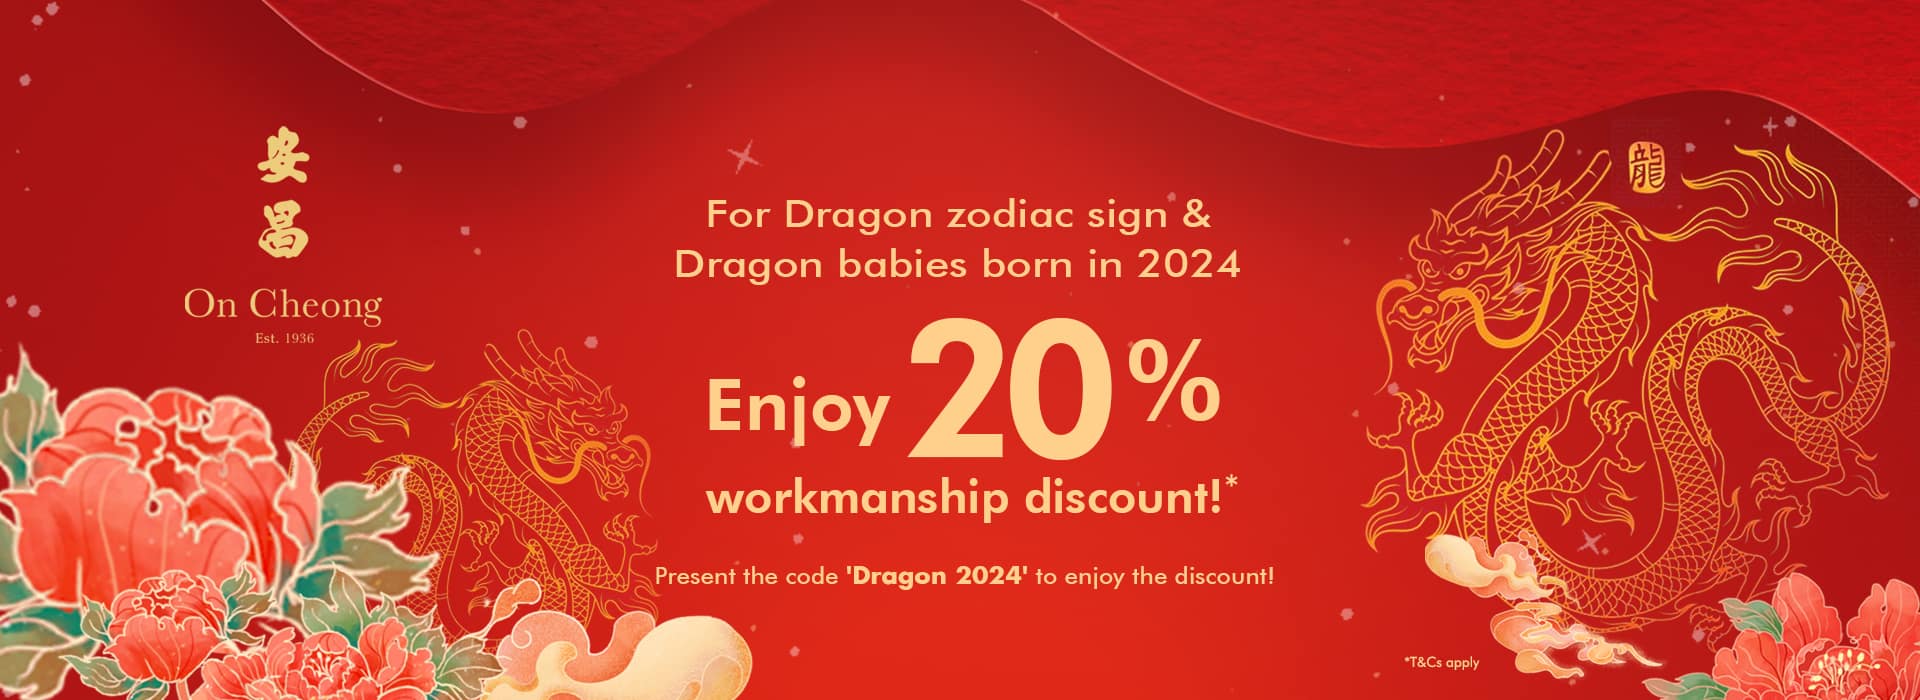 On Cheong CNY 2024 Dragon